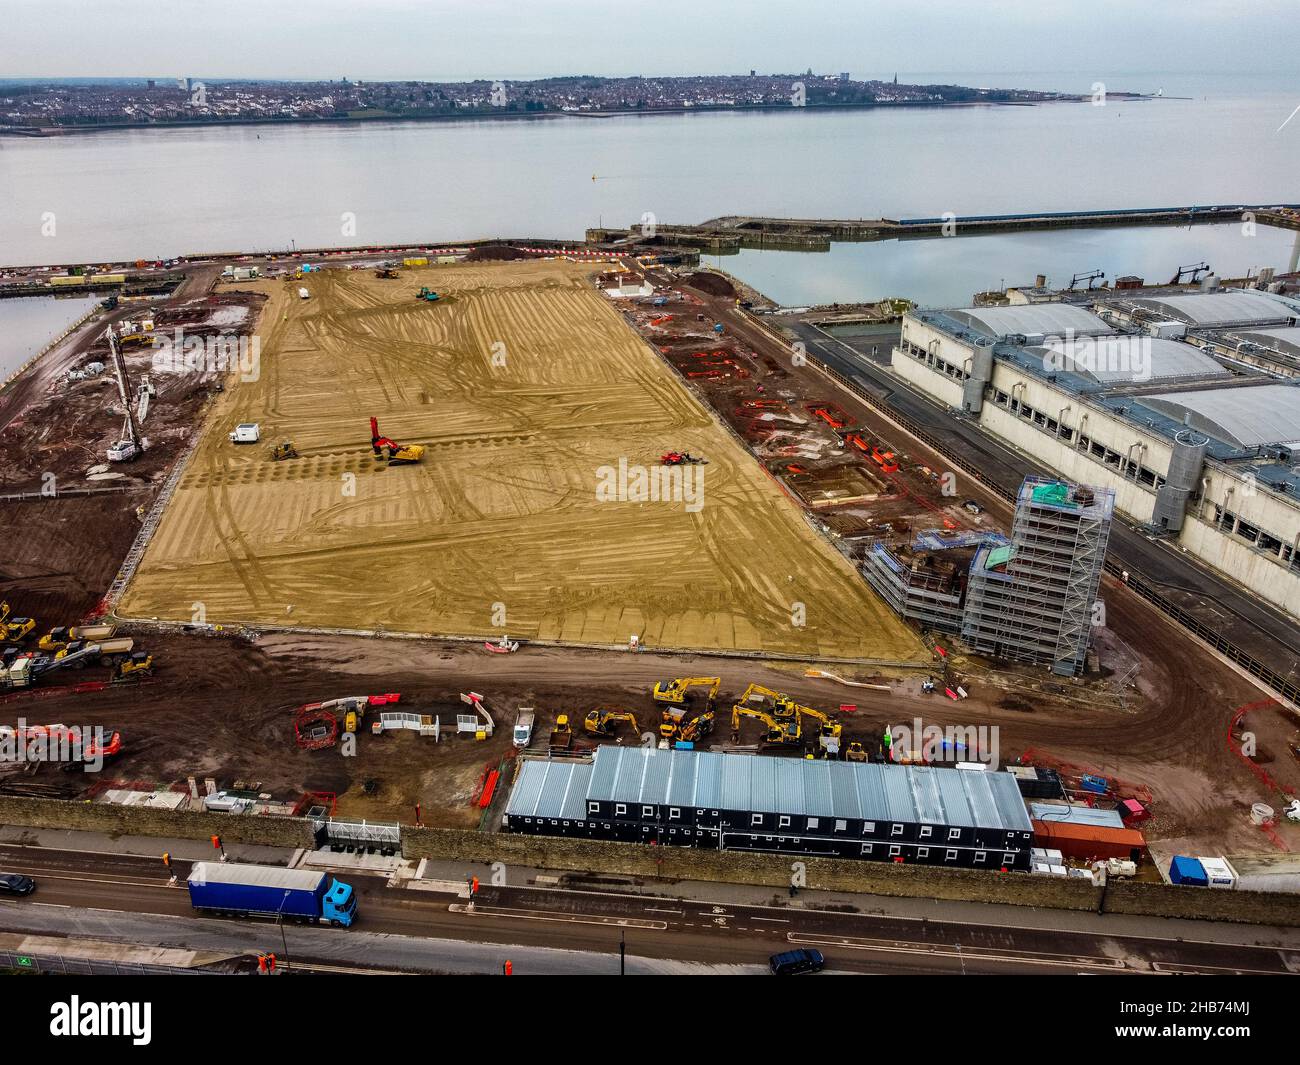 Vue aérienne des travaux de construction sur le site du nouveau stade du club de football d'Everton en cours de construction au quai de Bramley-Moore.Date de la photo: Vendredi 17 décembre 2021. Banque D'Images